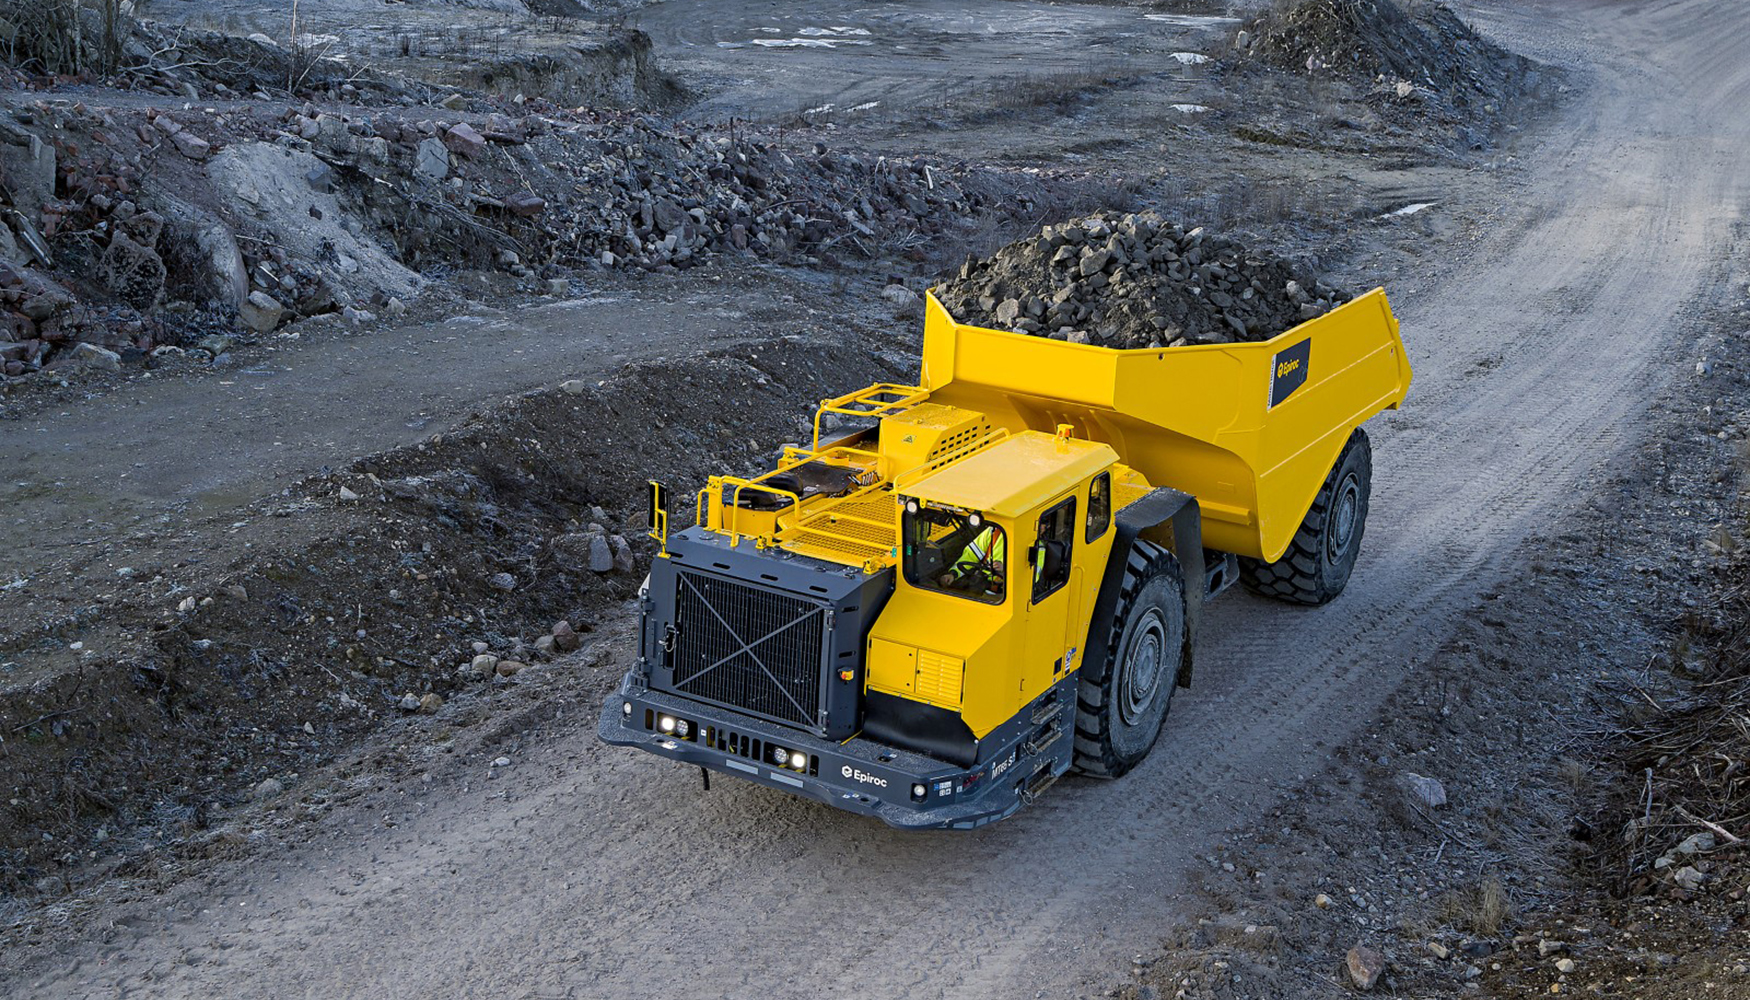 Minetruck MT65 S, camin minero de 65 toneladas de Epiroc, trasladando material